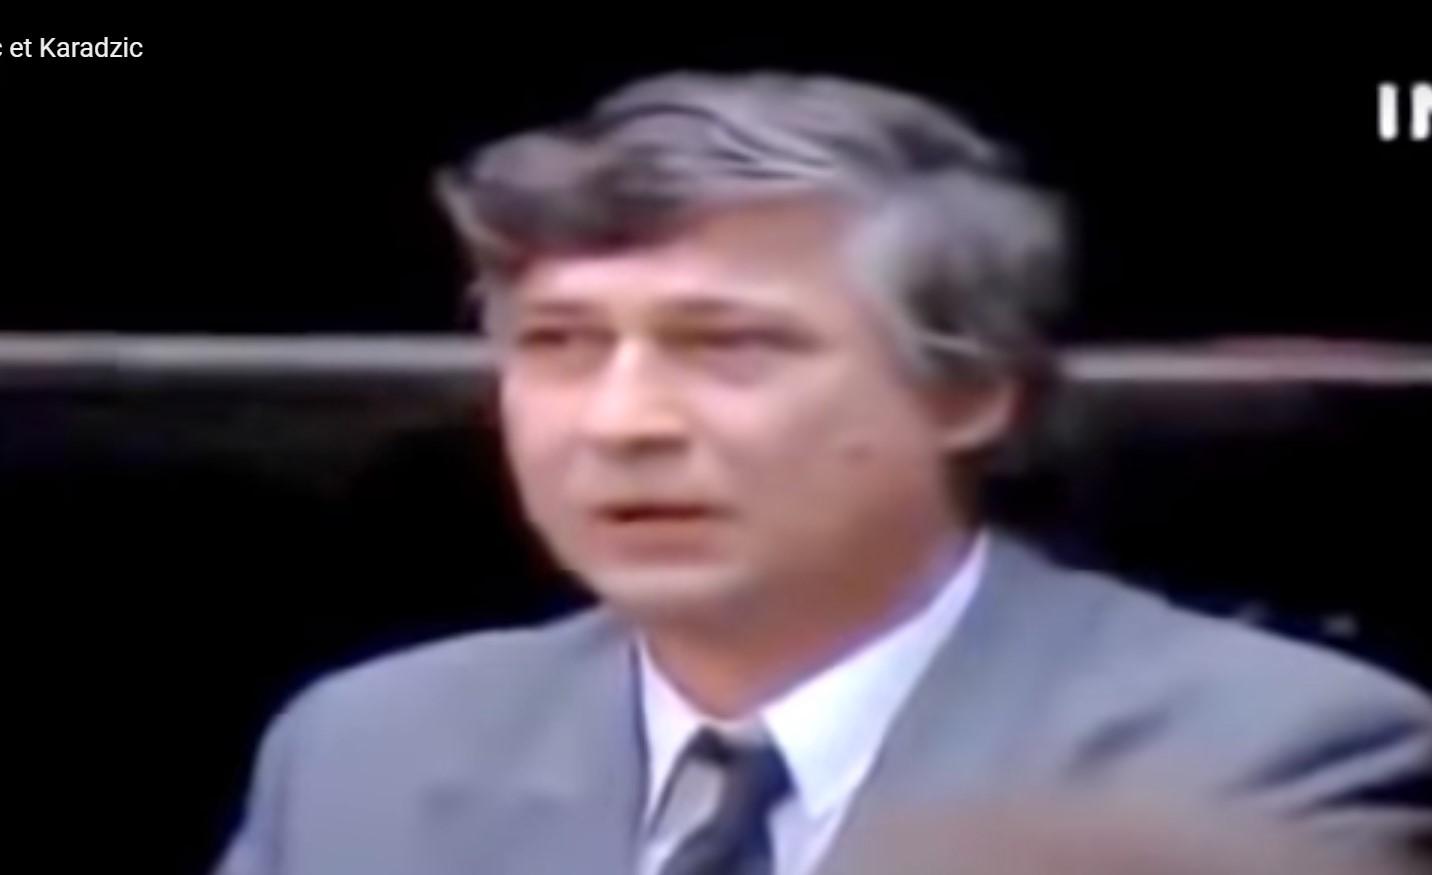 Ovako je Nijaz Duraković replicirao zločincu Karadžiću 1991. godine